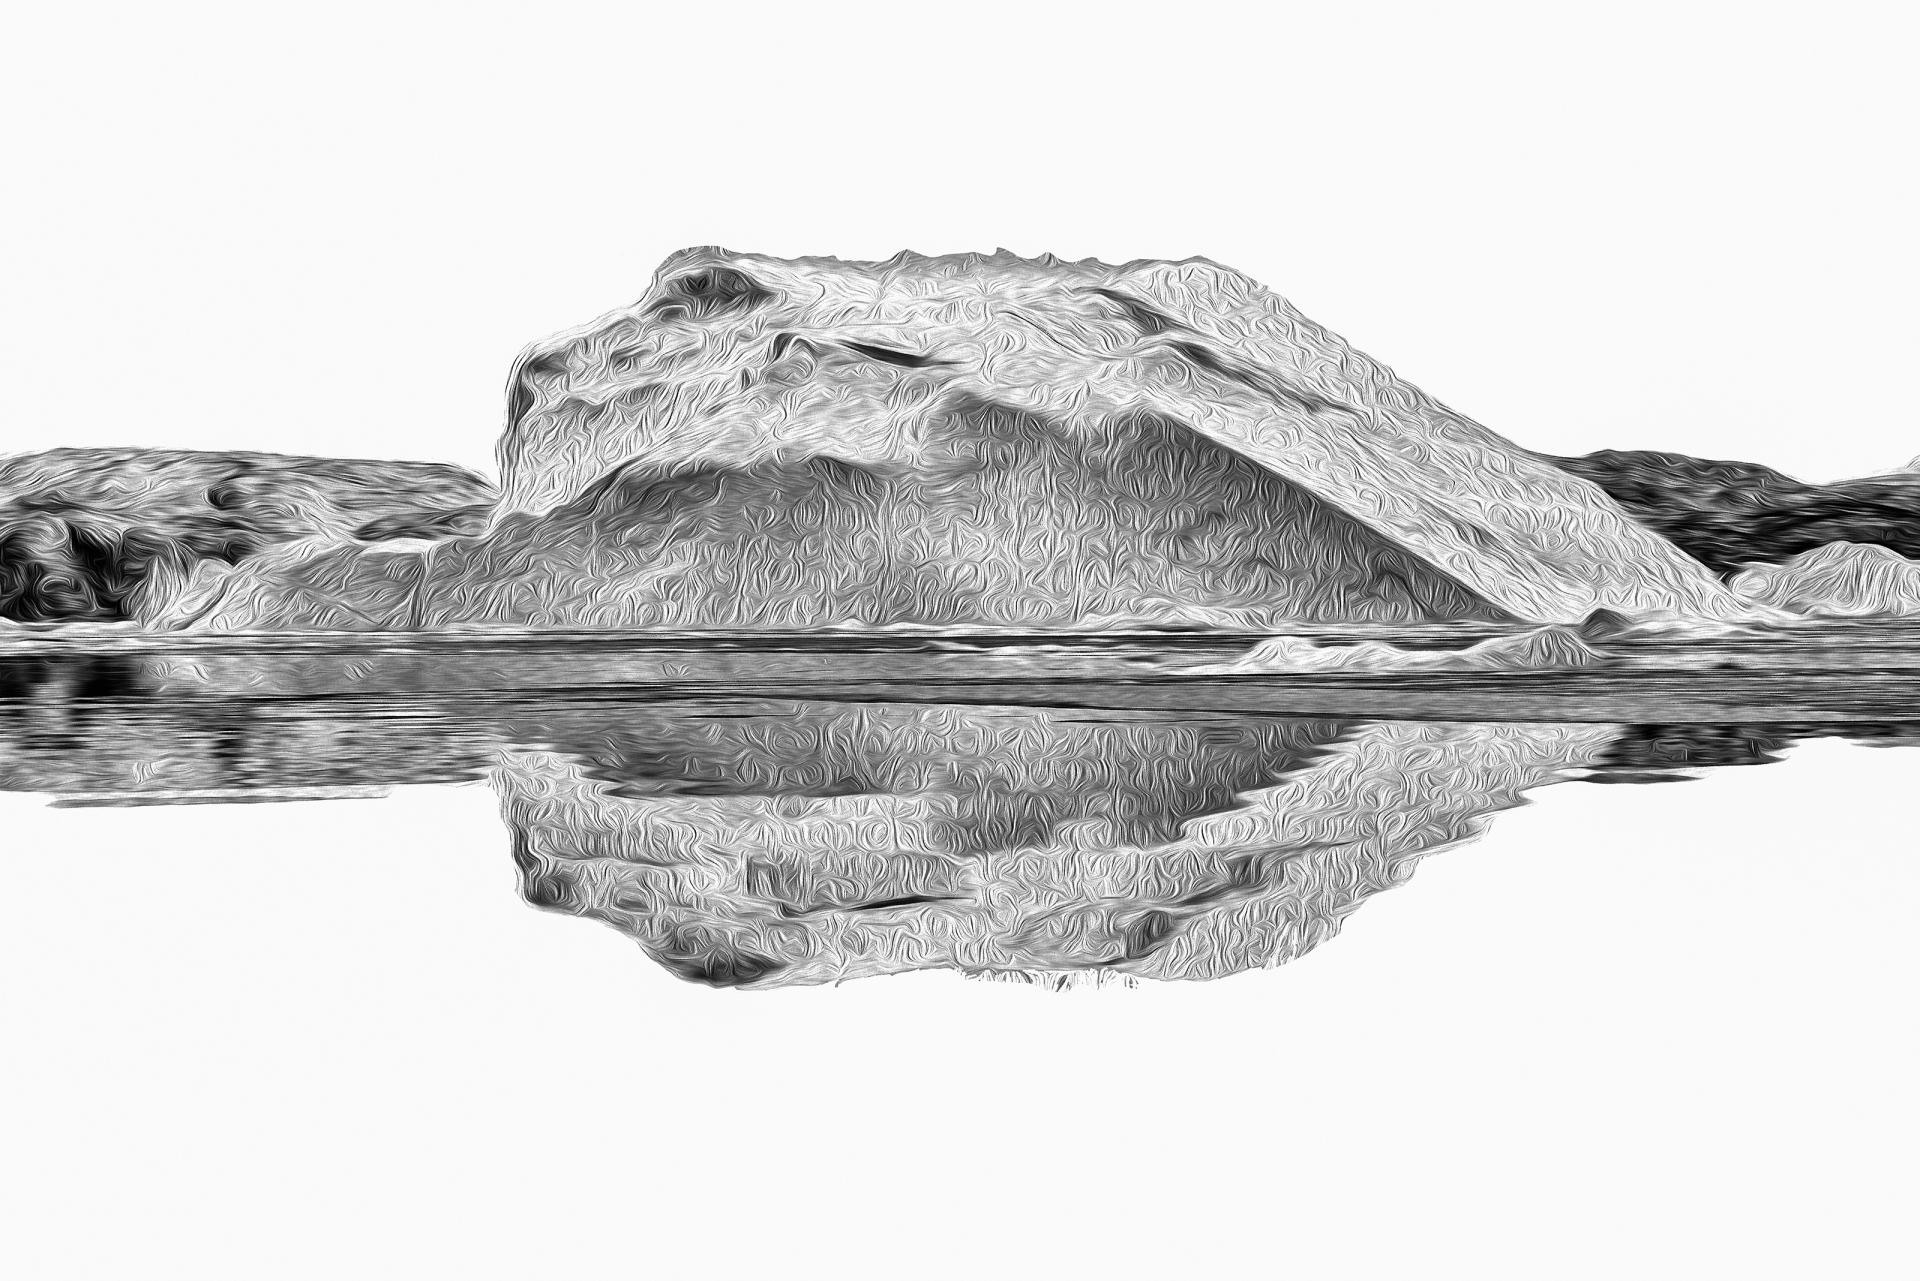 New York Photography Awards Winner - The Art of Iceberg